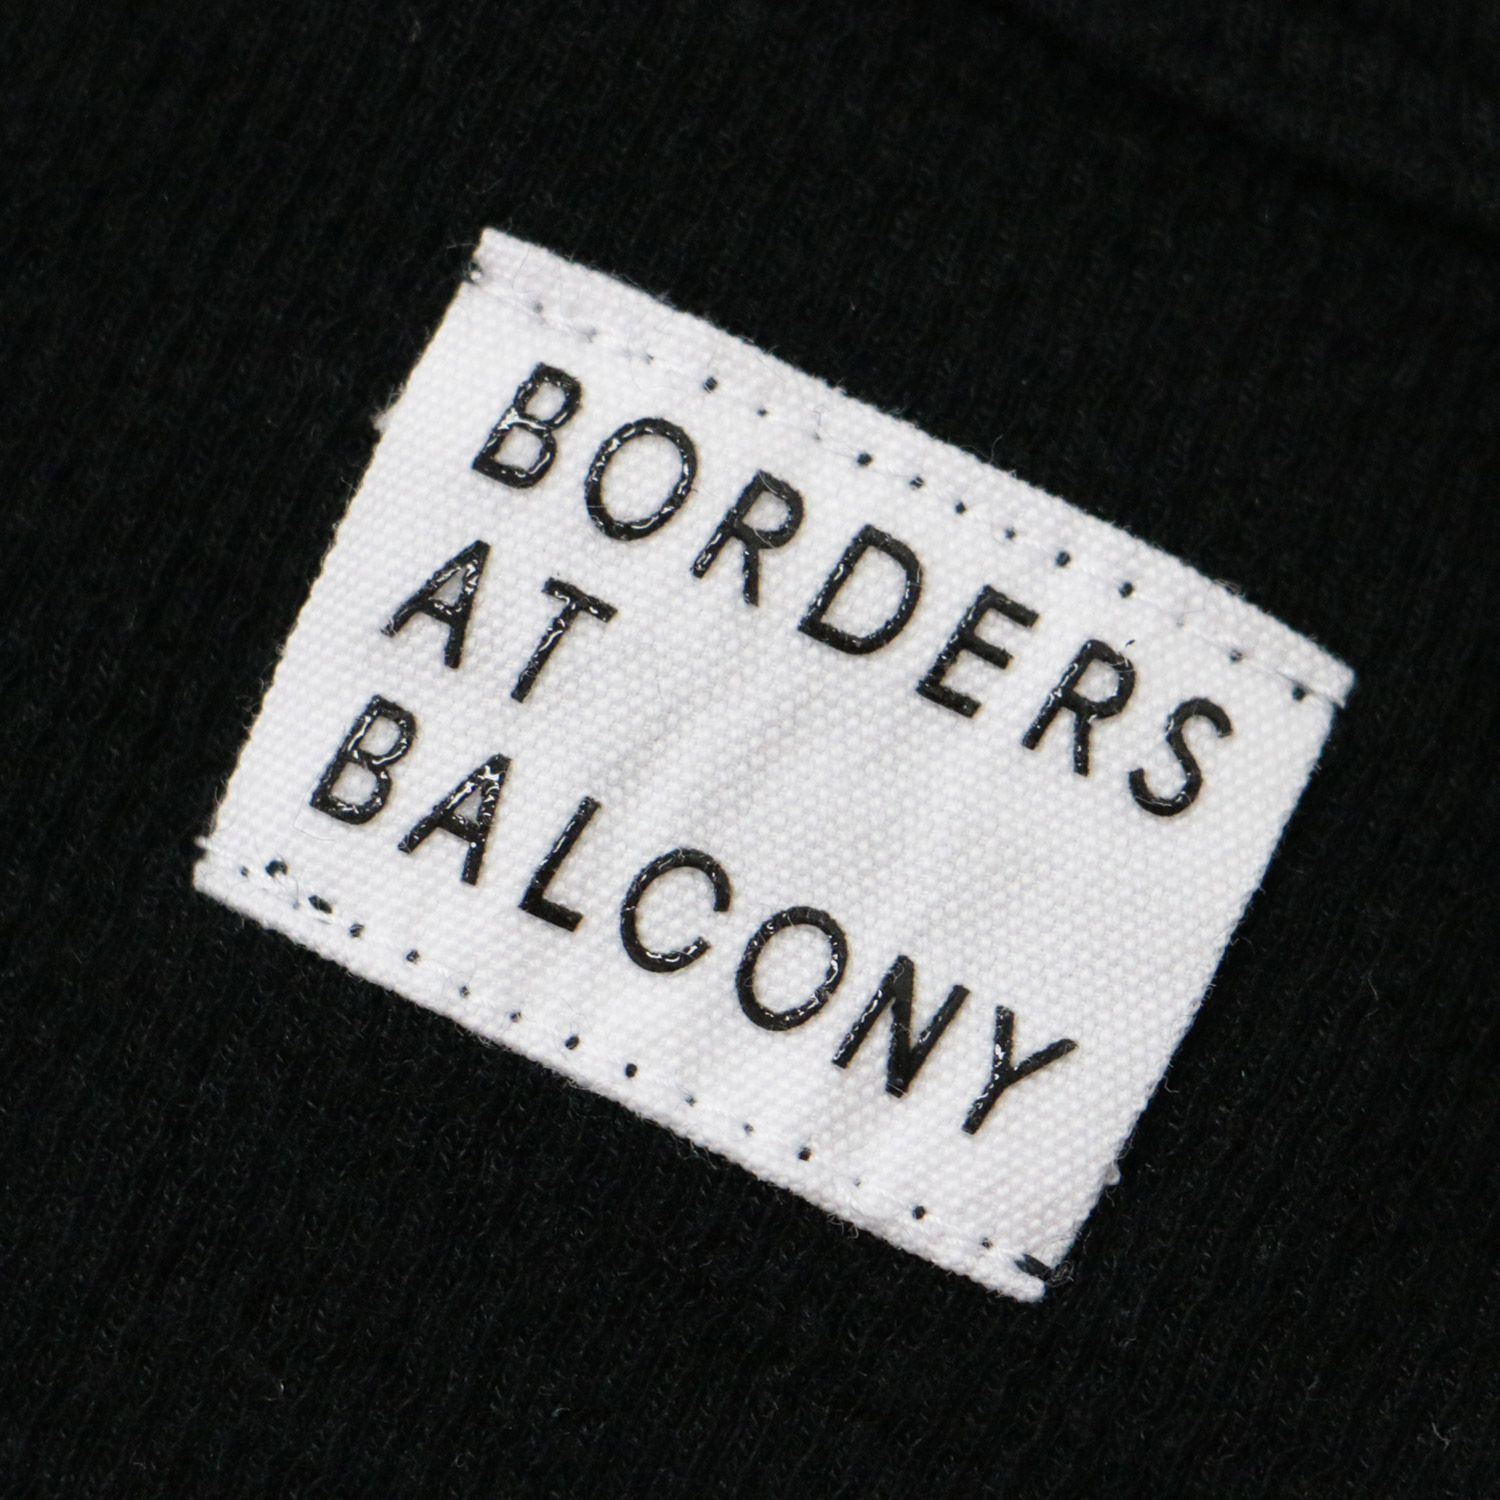 【楽天市場】BORDERS at BALCONY ボーダーズアットバルコニー ニット プルオーバー トップス ブラック 黒 36 S ラウンドネック ノースリーブ タンクトップ リブ